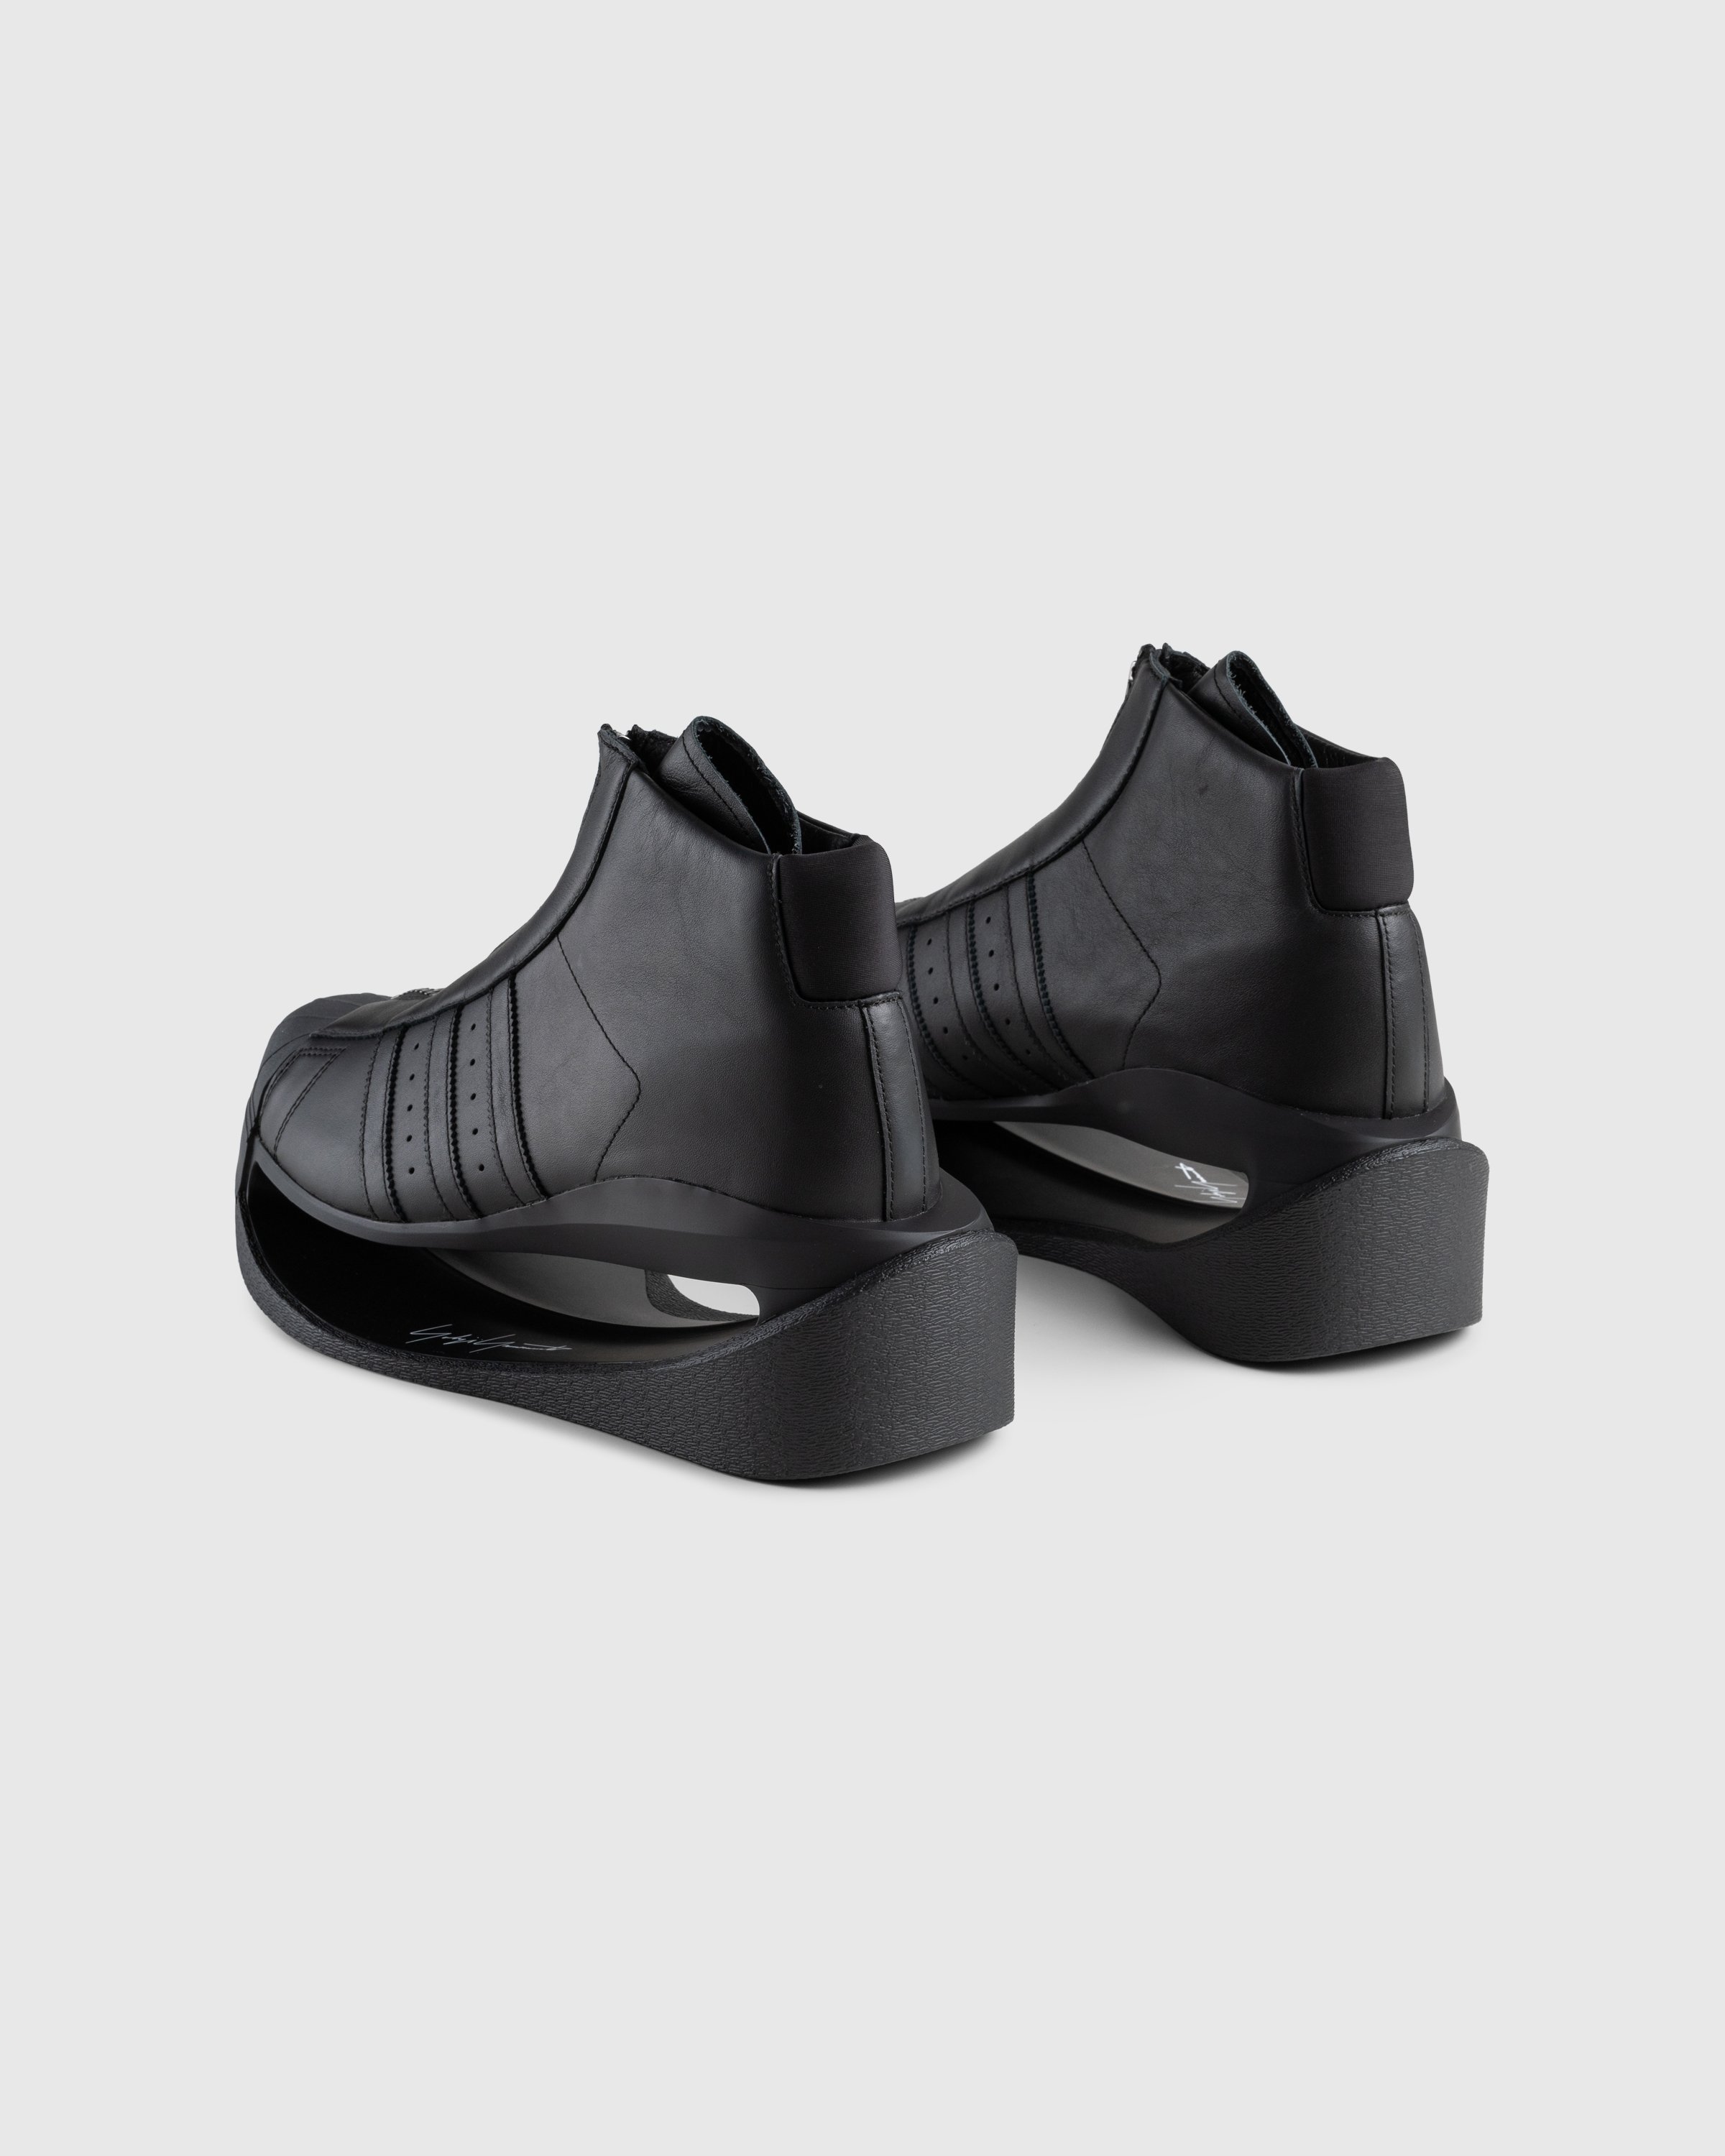 Y-3 - Gendo Pro Model Black - Footwear - Black - Image 4